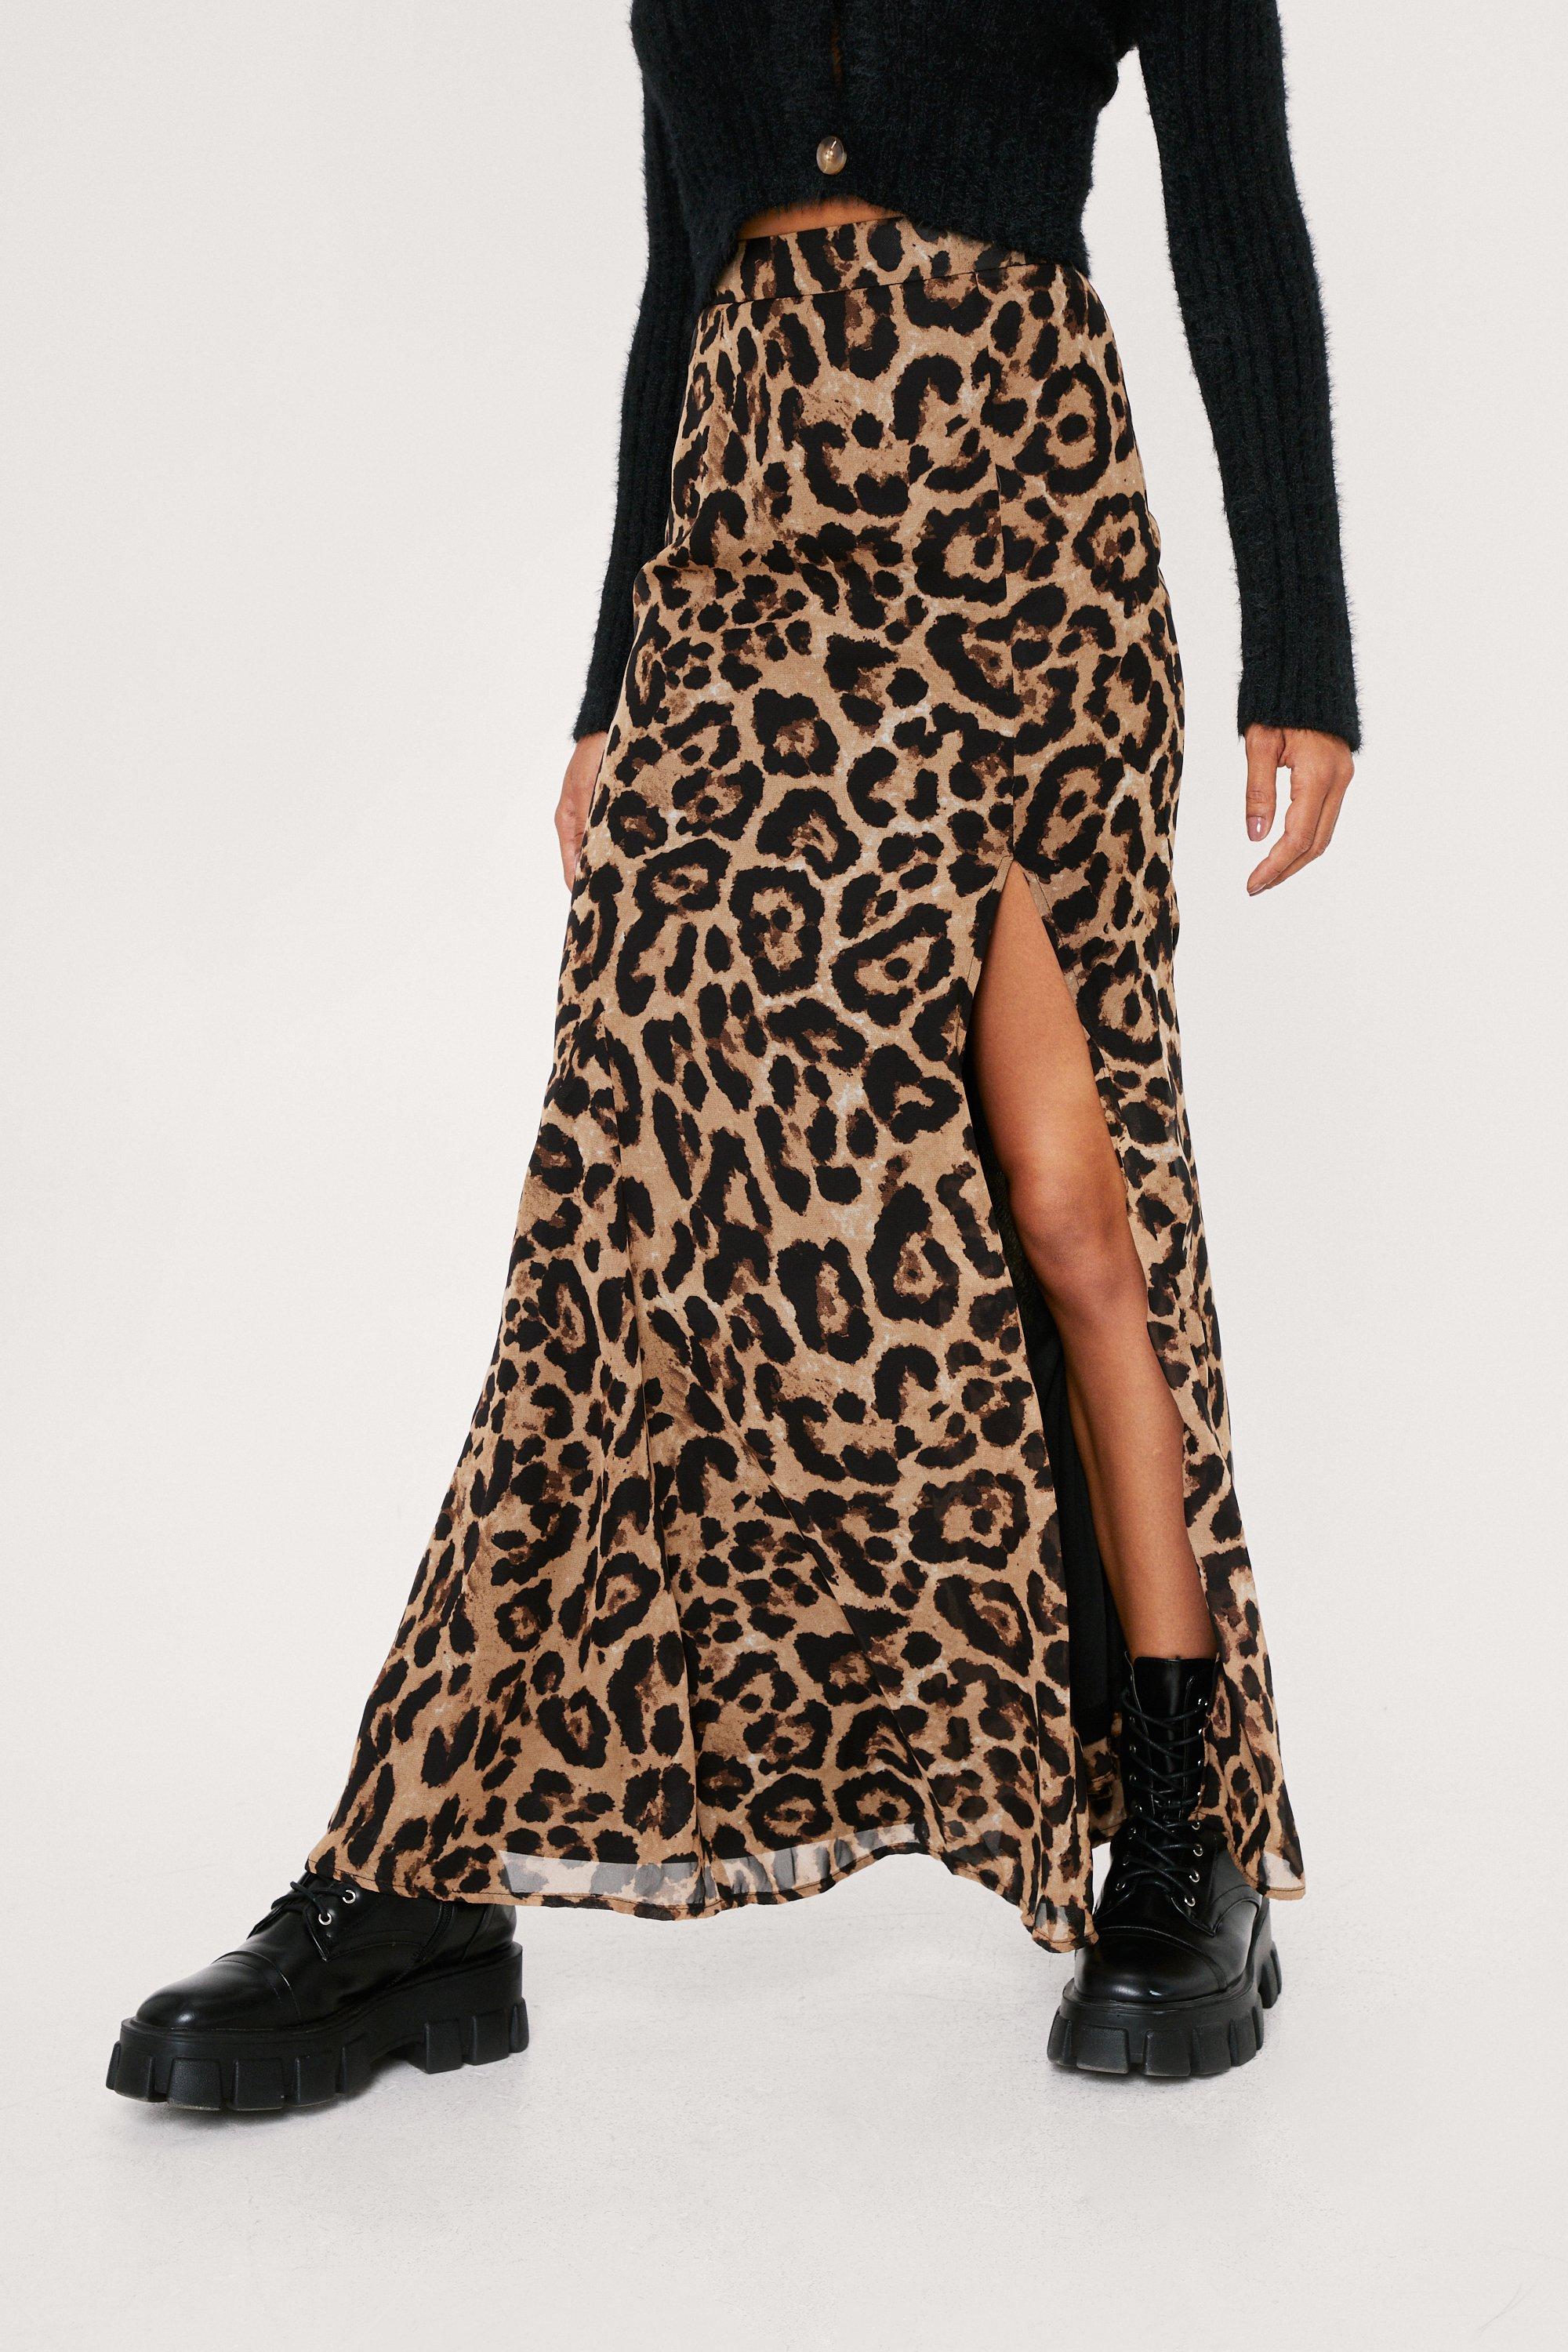 Leopard Print Chiffon Maxi Skirt